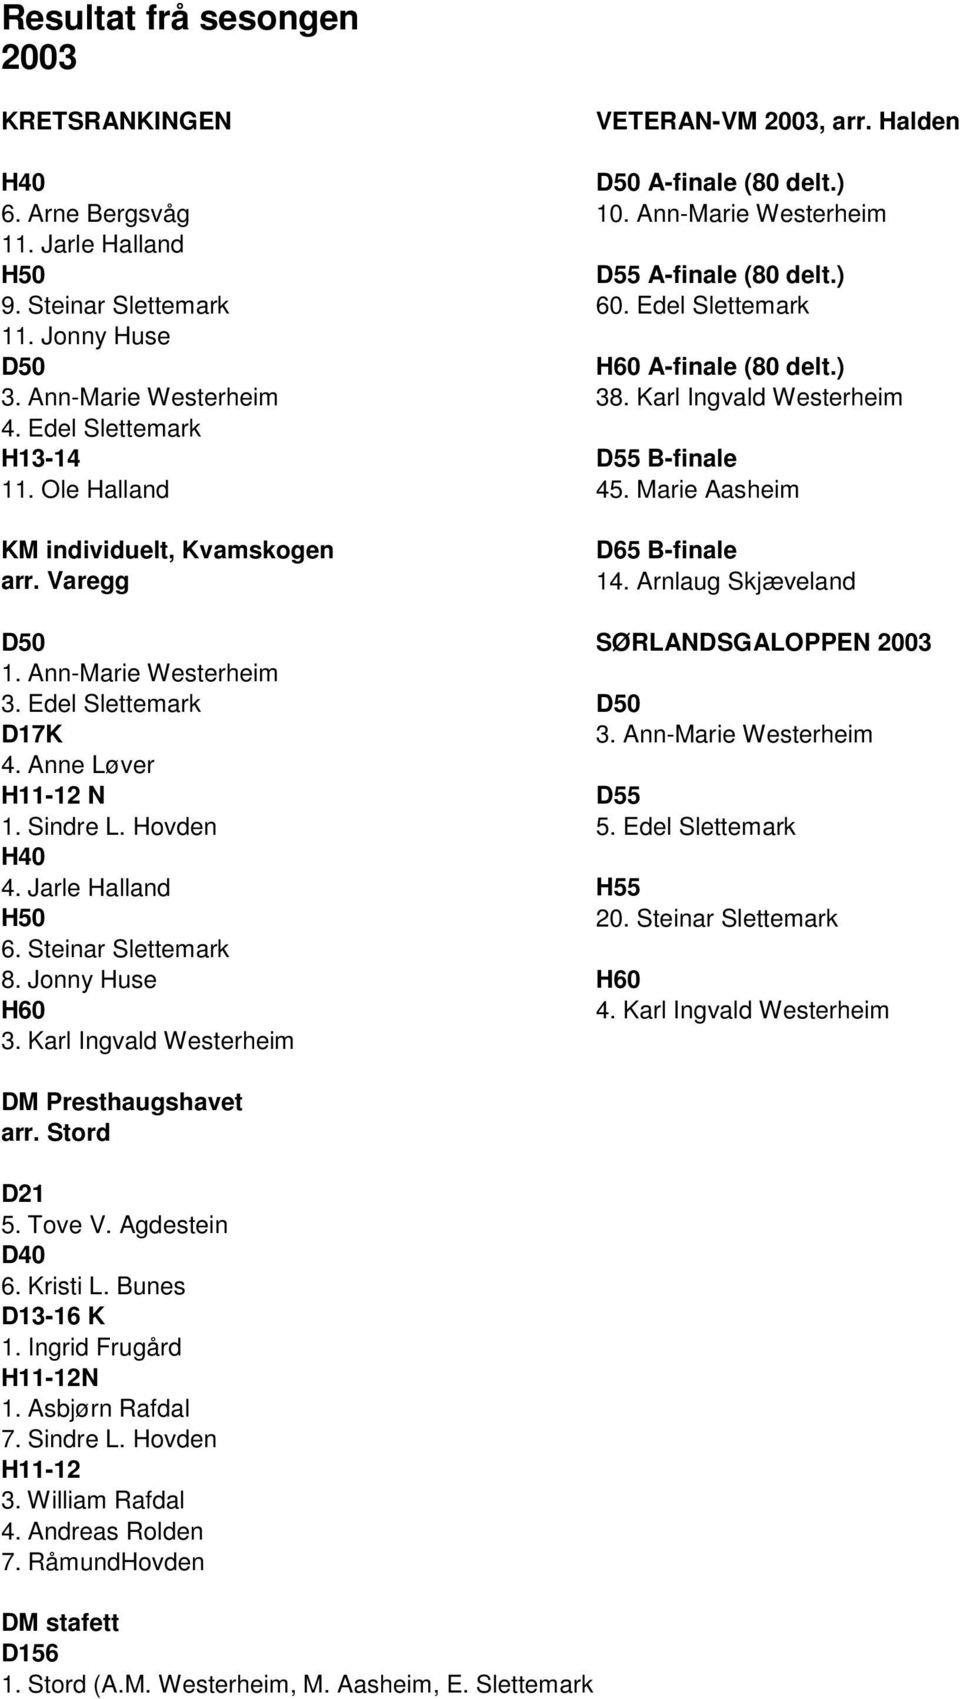 Marie Aasheim KM individuelt, Kvamskogen arr. Varegg D65 B-finale 14. Arnlaug Skjæveland D50 SØRLANDSGALOPPEN 2003 1. Ann-Marie Westerheim 3. Edel Slettemark D50 D17K 3. Ann-Marie Westerheim 4.